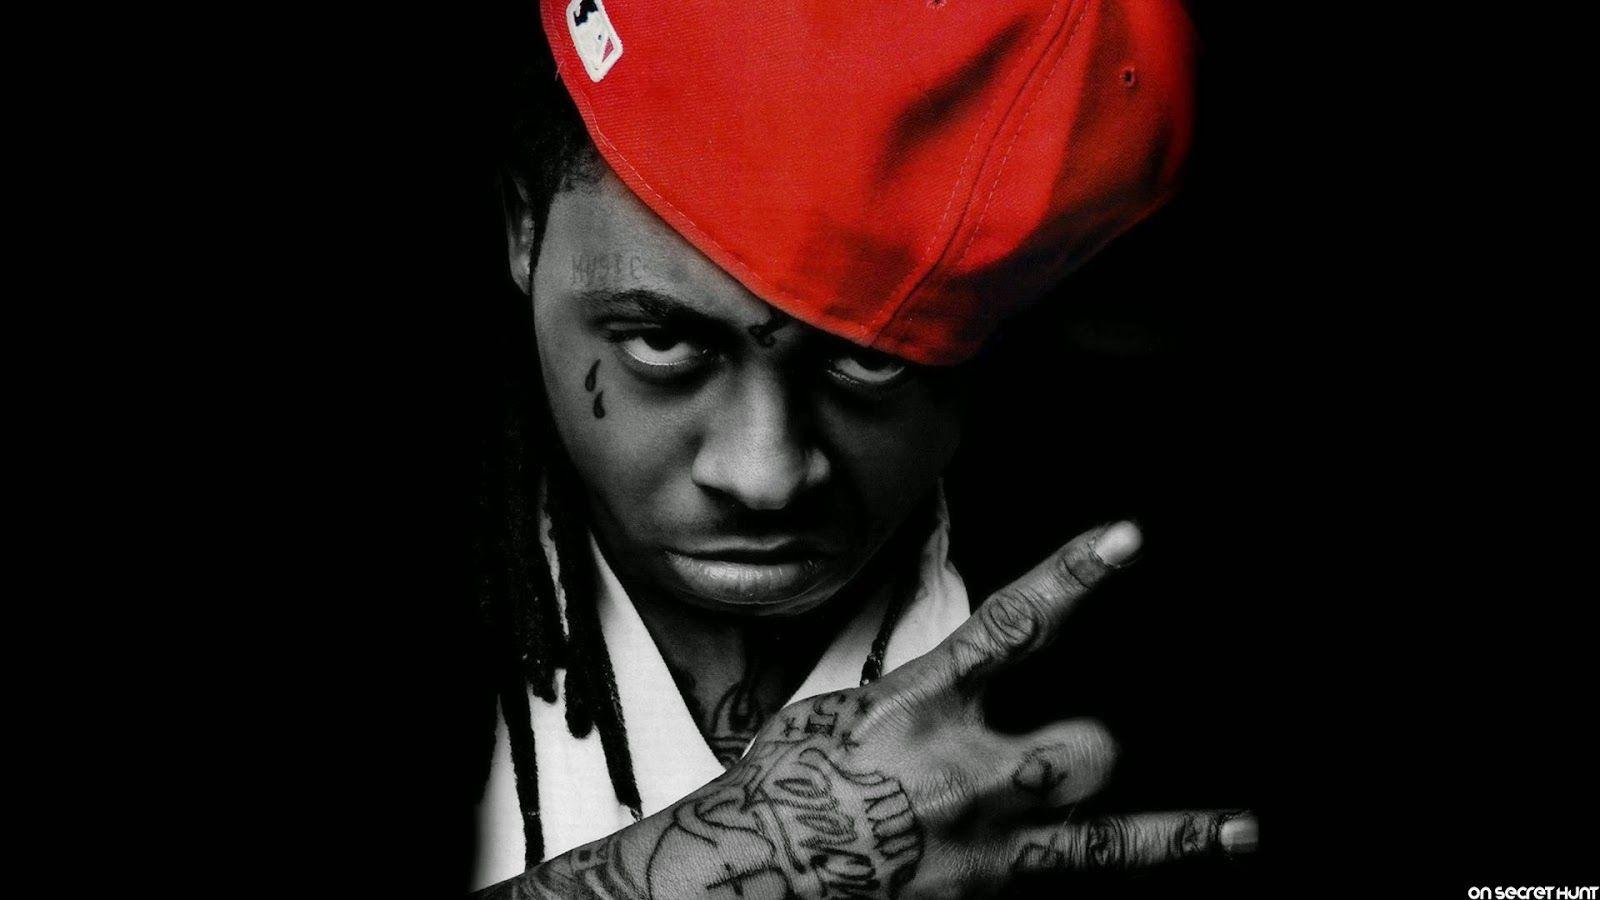 True Music In Hip Hop: Lil Wayne Reveals “Tha Carter V” Album Cover